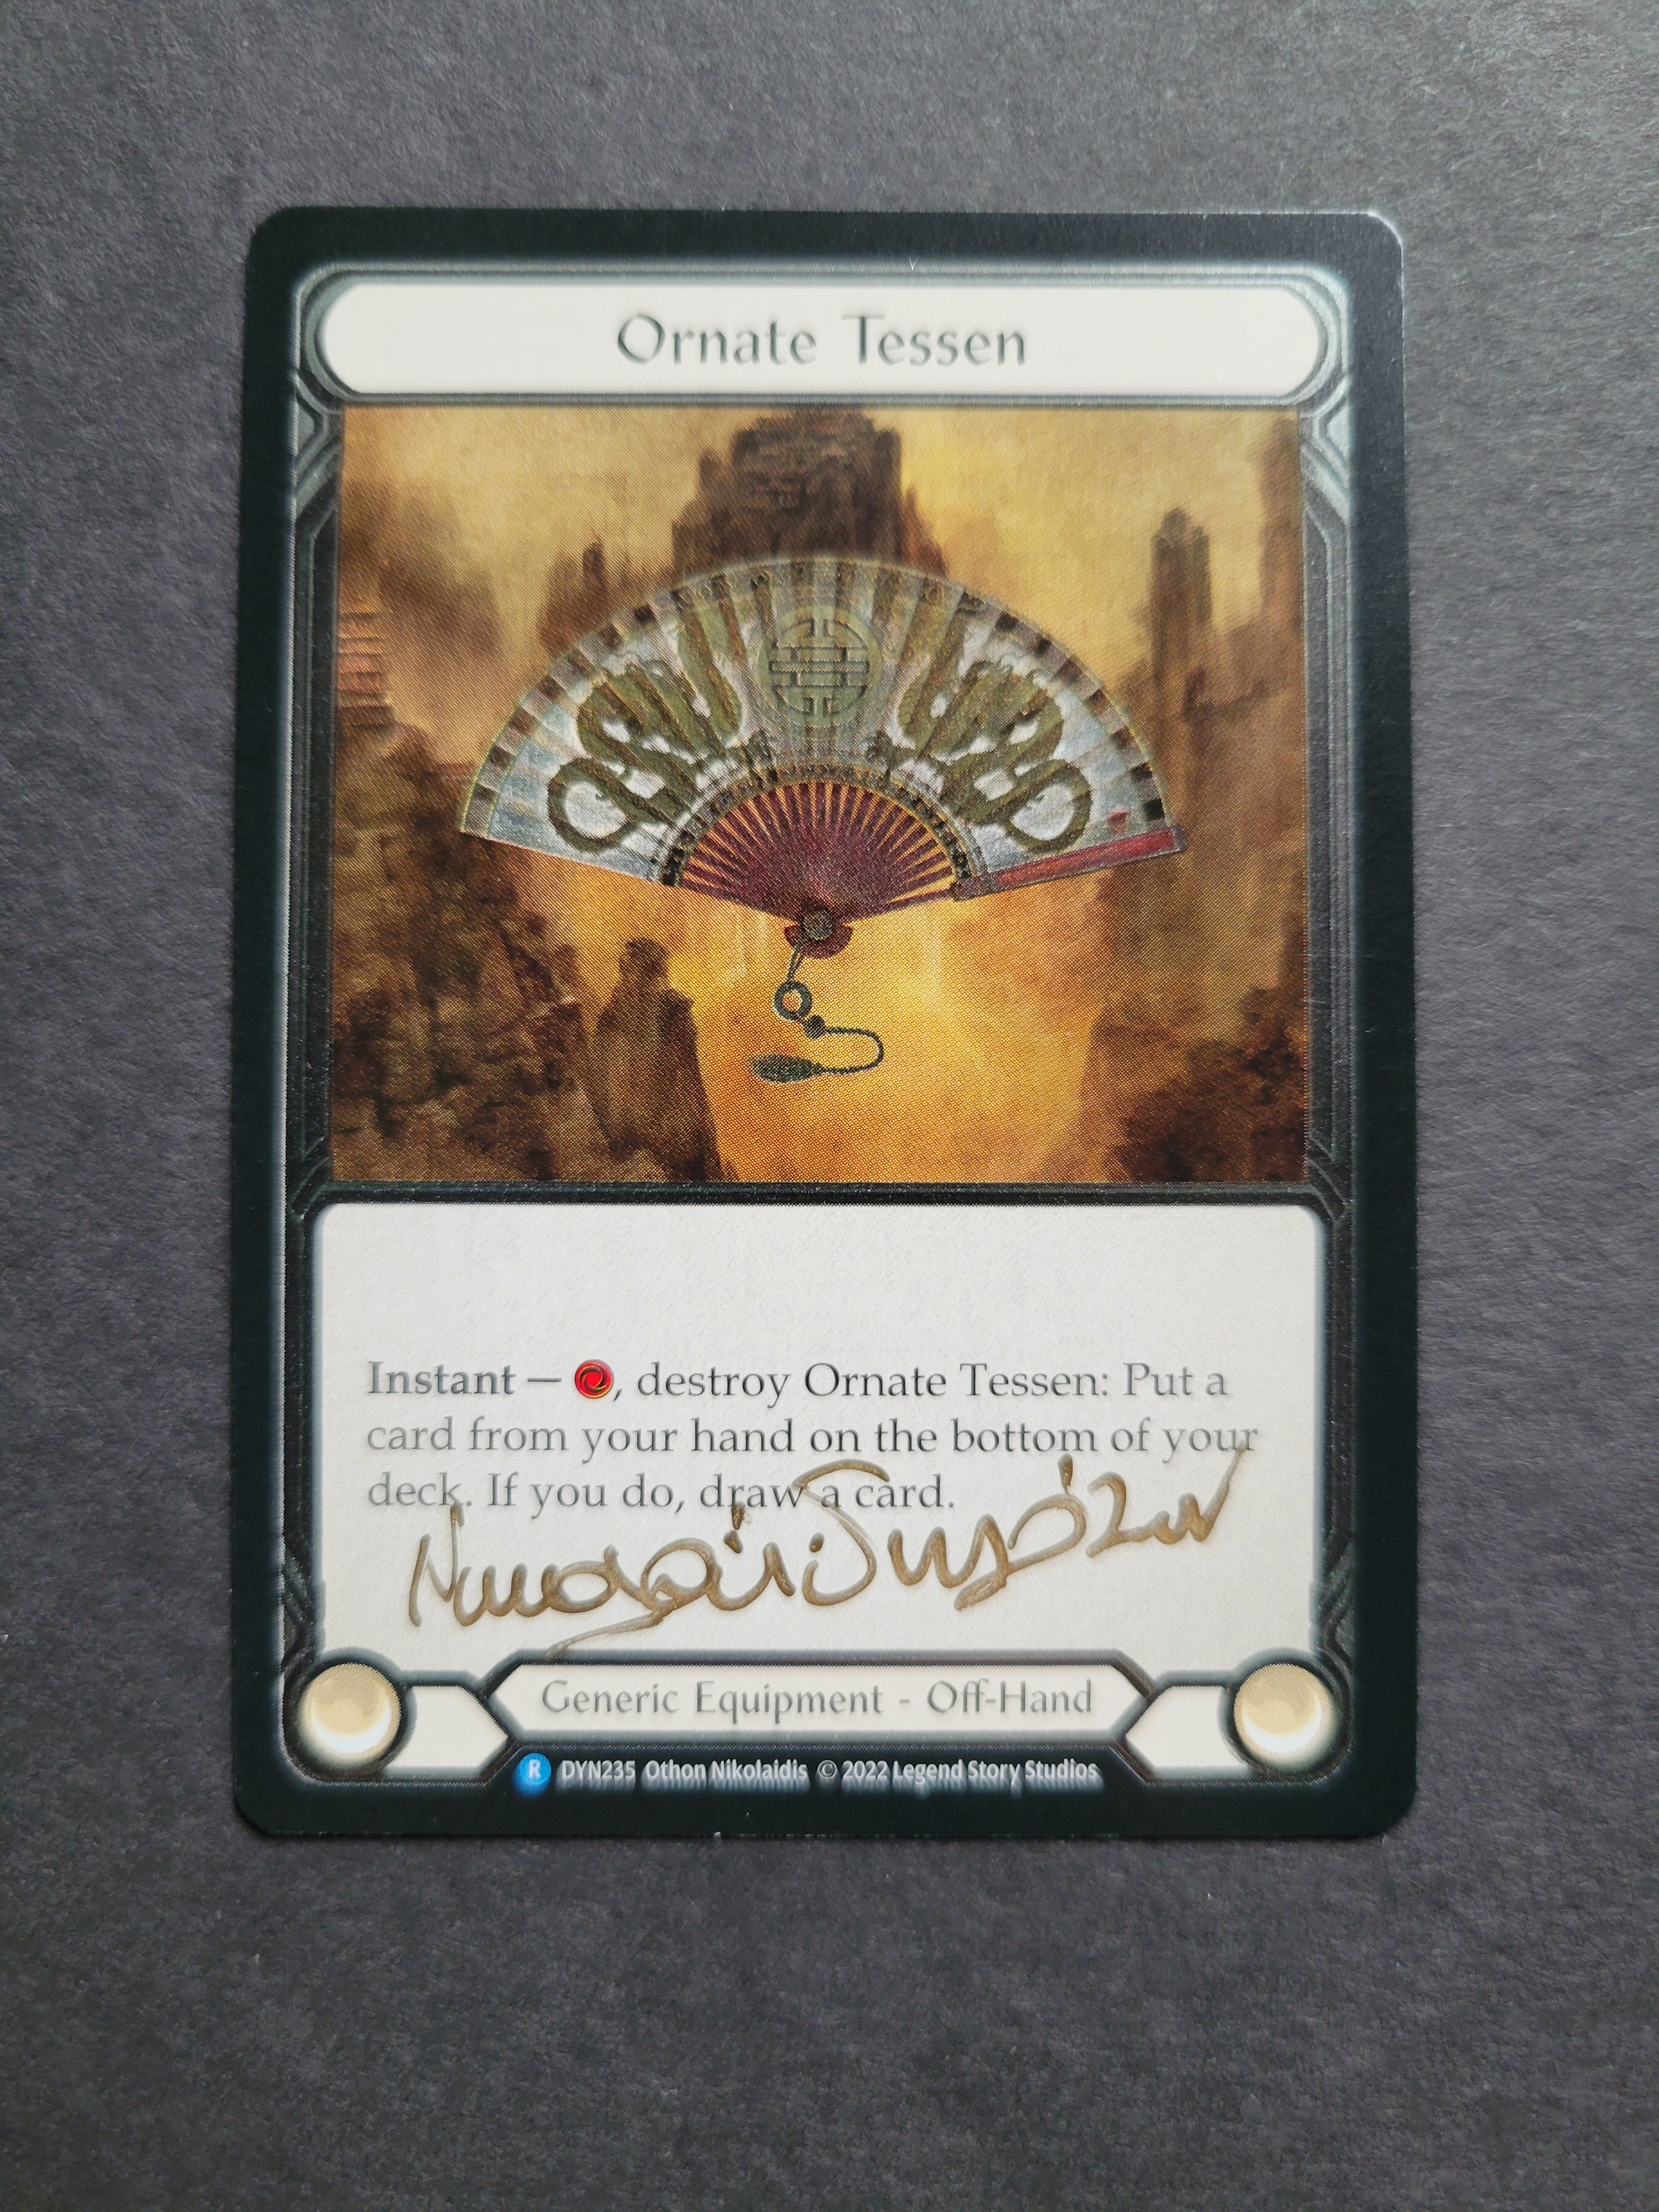 Signed Cold Foil "Ornate Tessen"